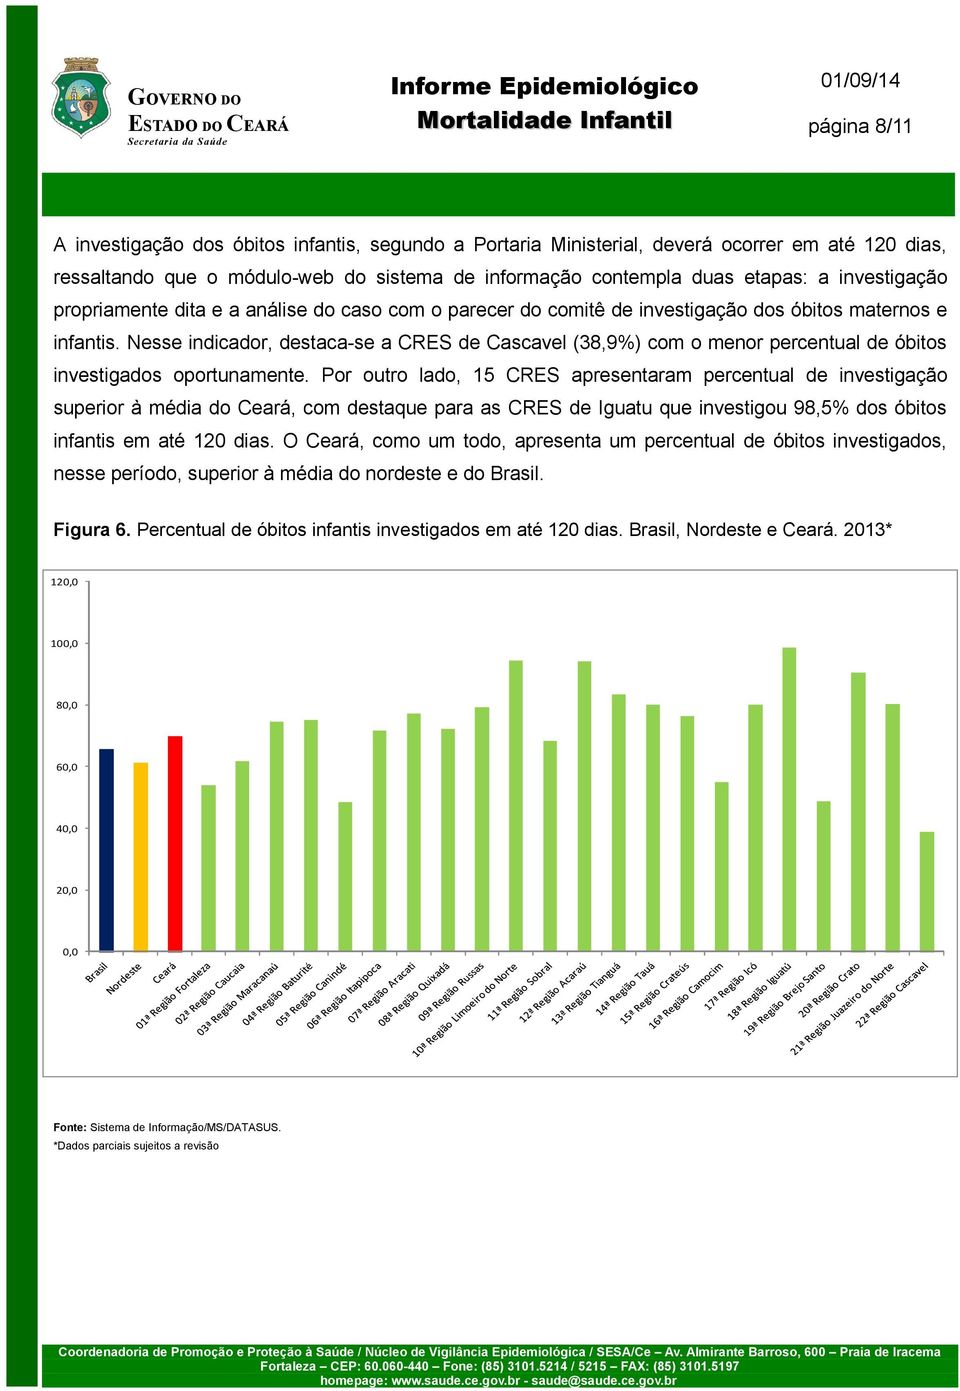 Nesse indicador, destaca-se a CRES de Cascavel (38,9%) com o menor percentual de óbitos investigados oportunamente.